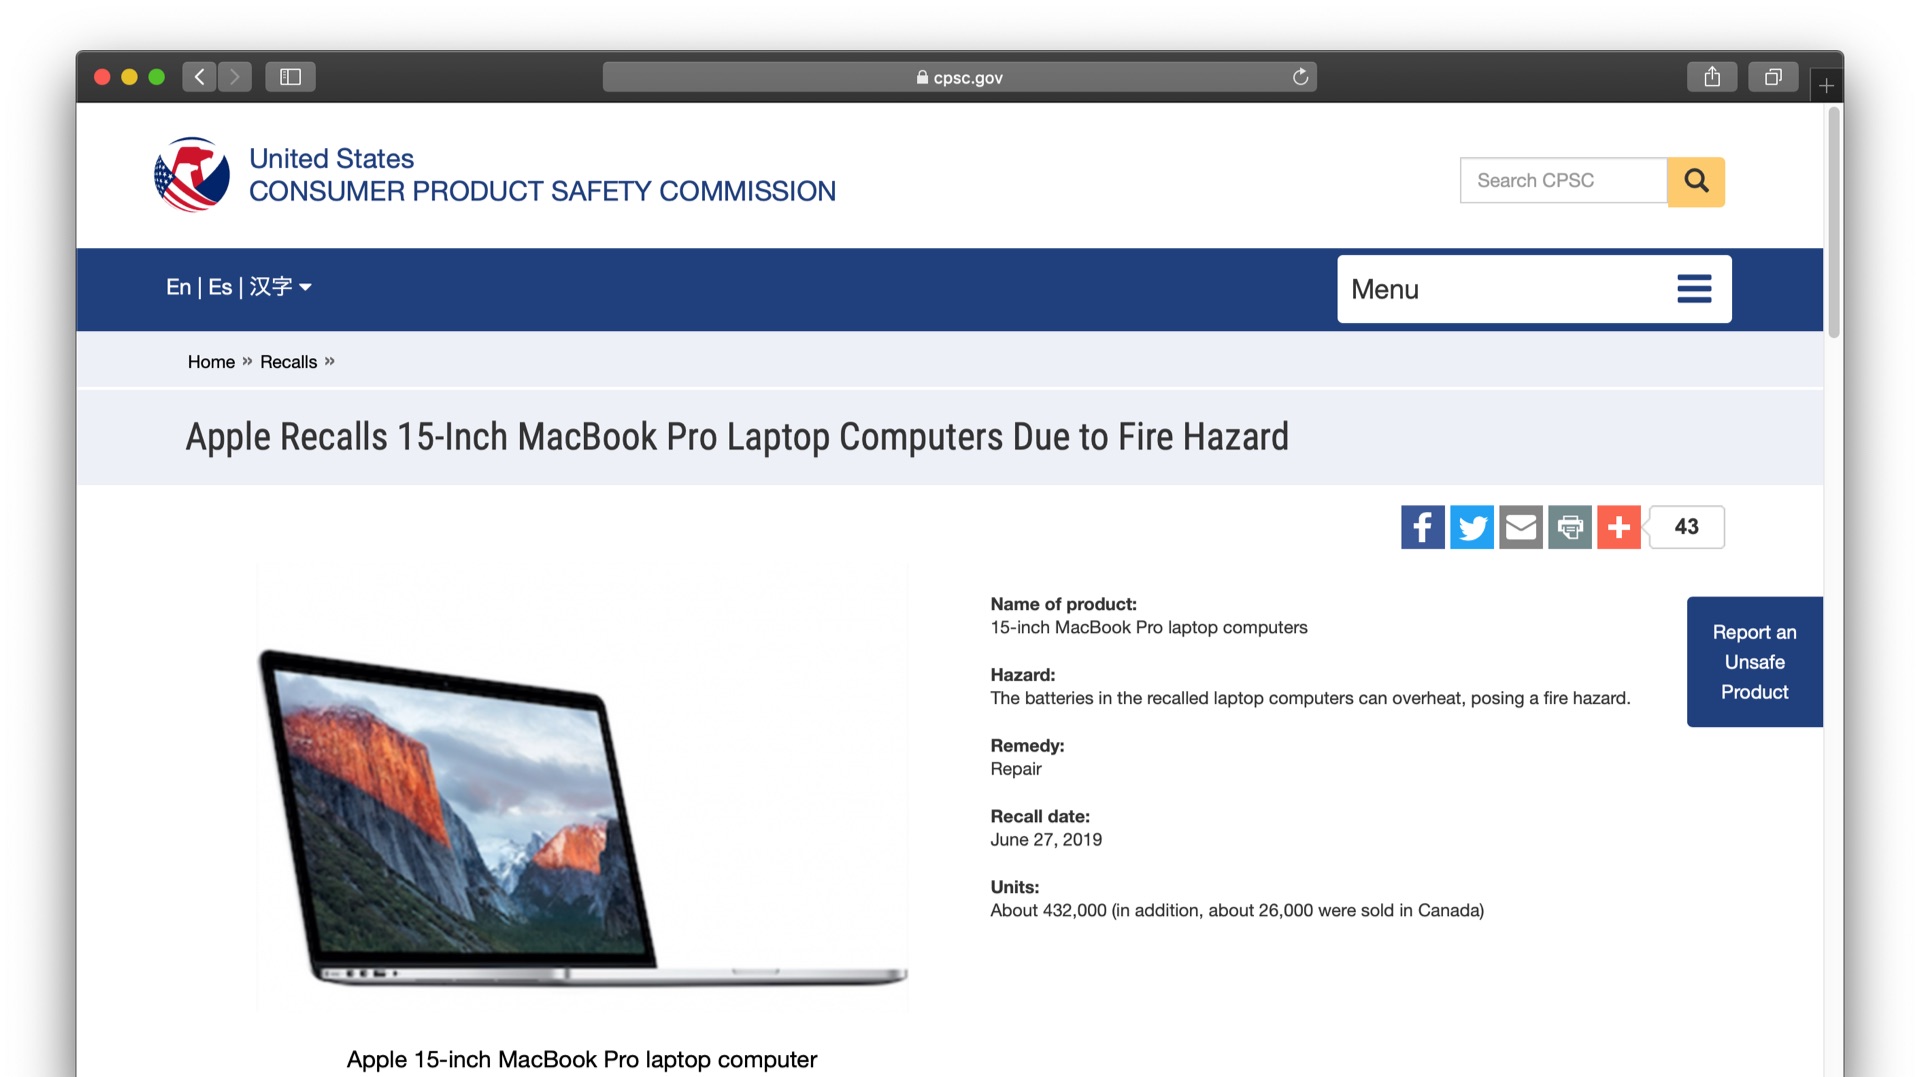 Apple Recalls 15-Inch MacBook Pro Laptop Computers Due to Fire Hazard